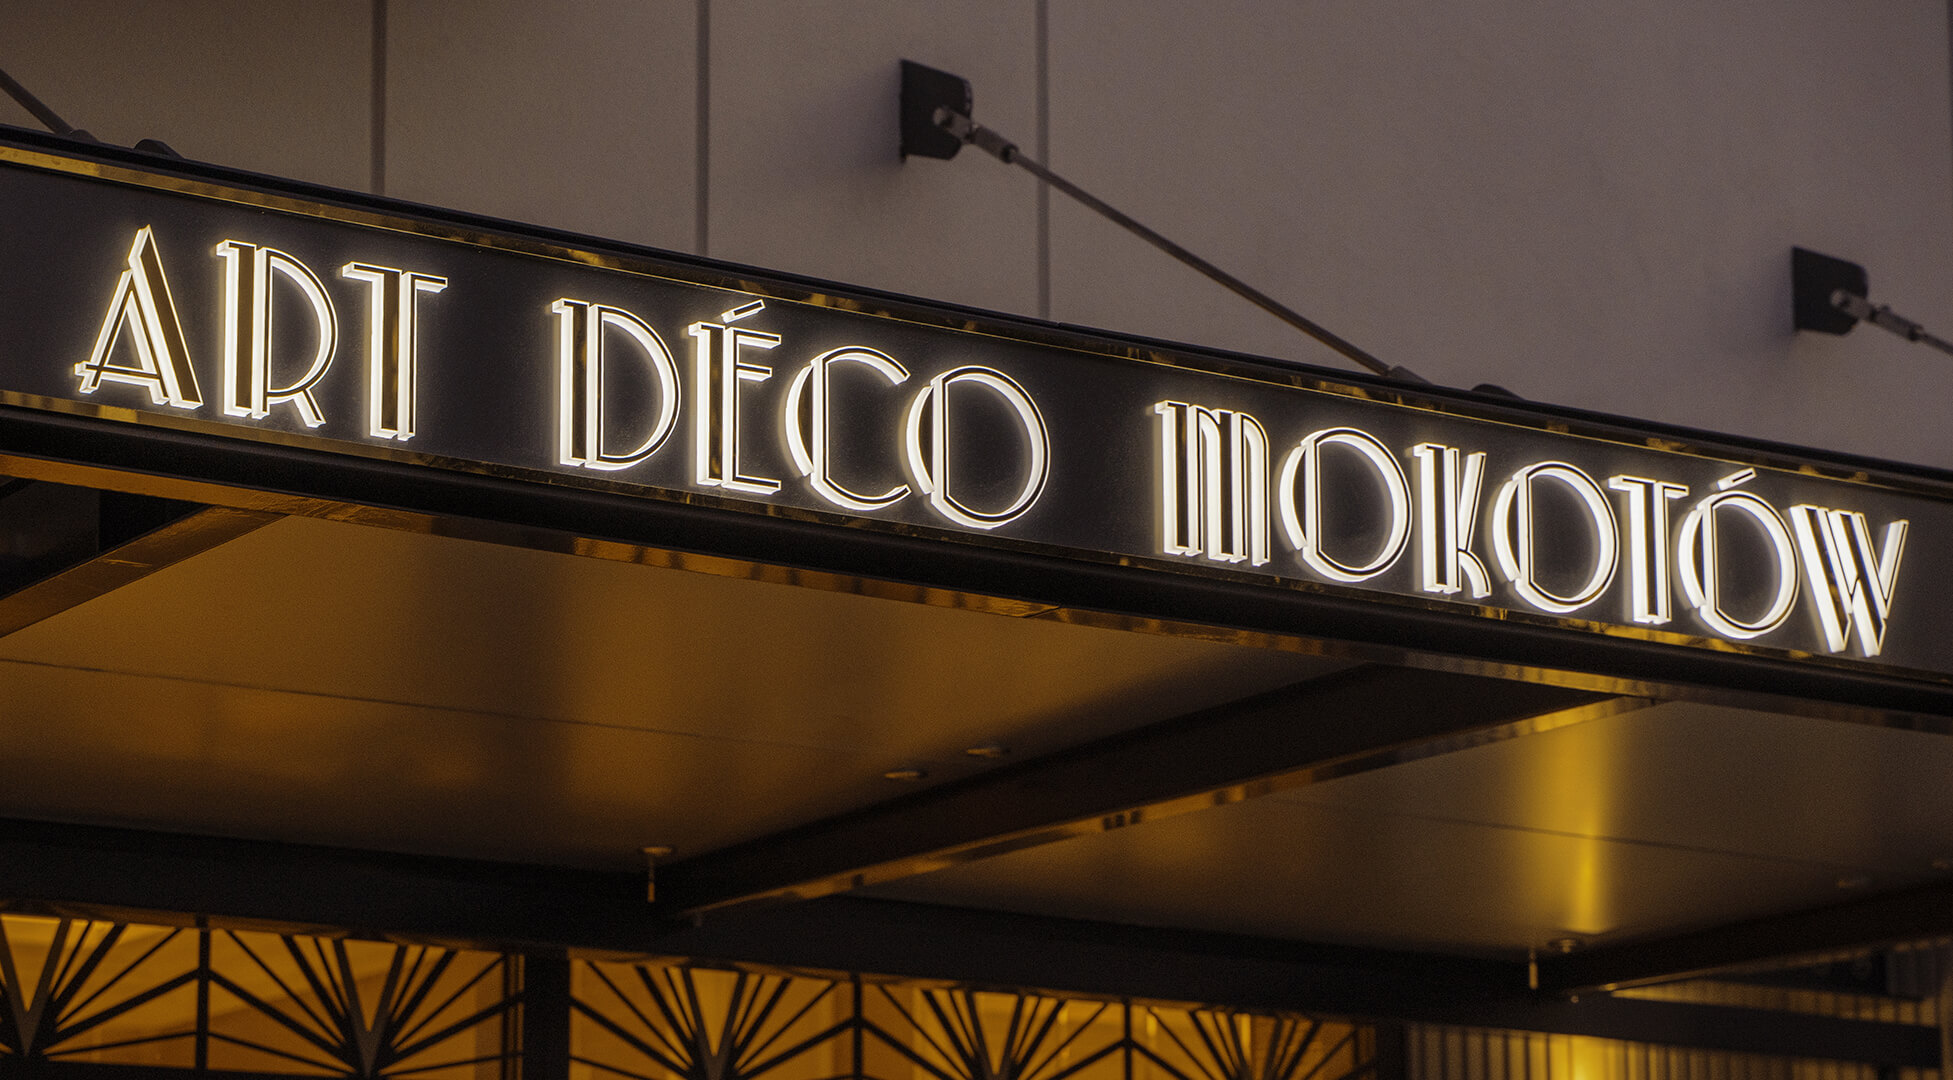 Art Deco Mokotow - Cassettone in dibond color oro sopra l'ingresso Art Deco di Mokotow, retroilluminato a LED.